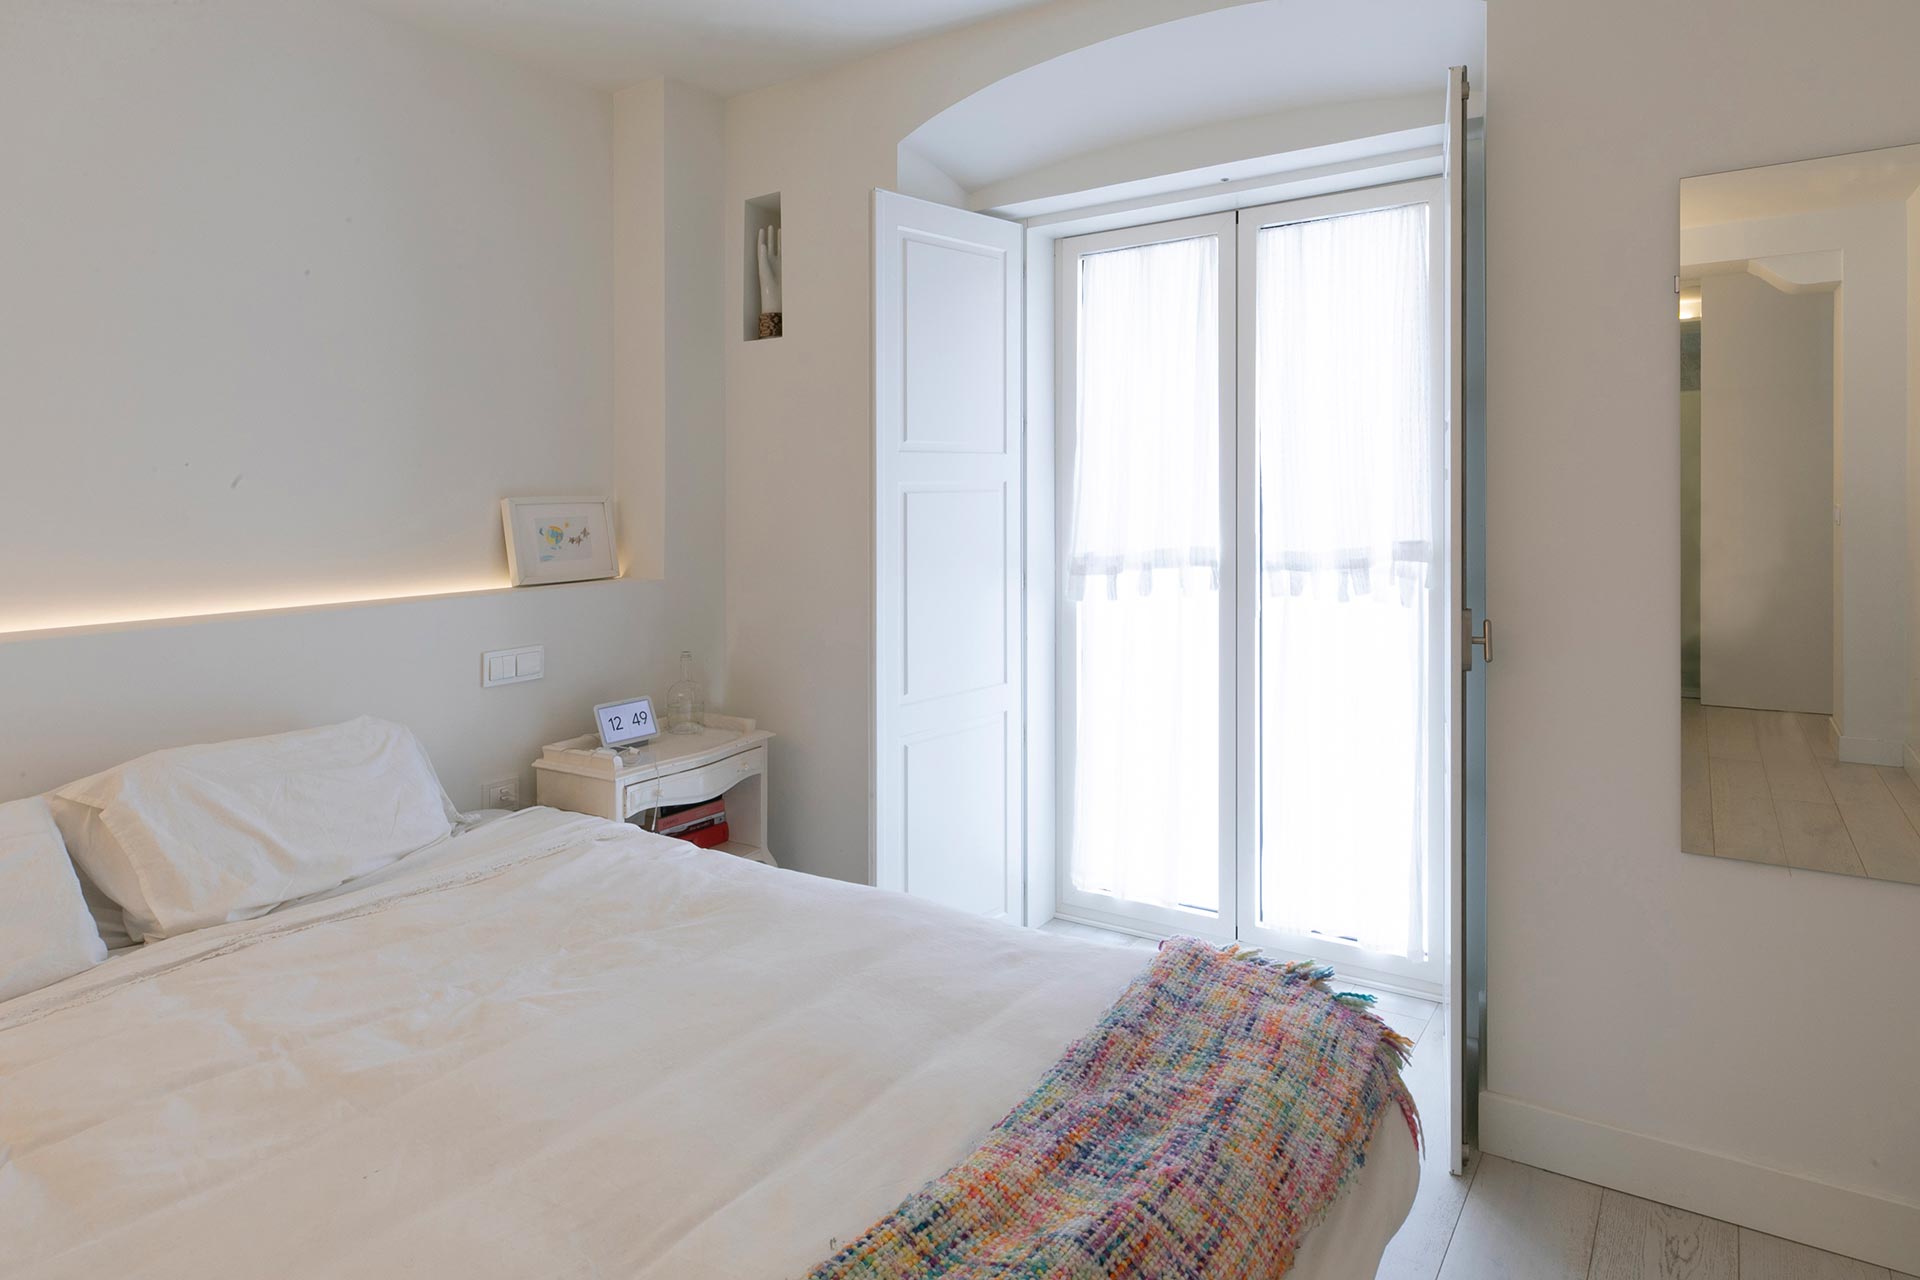 Dormitorio minimalista en reforma de vivienda moderna diseñada por Moah Arquitectos en Santander